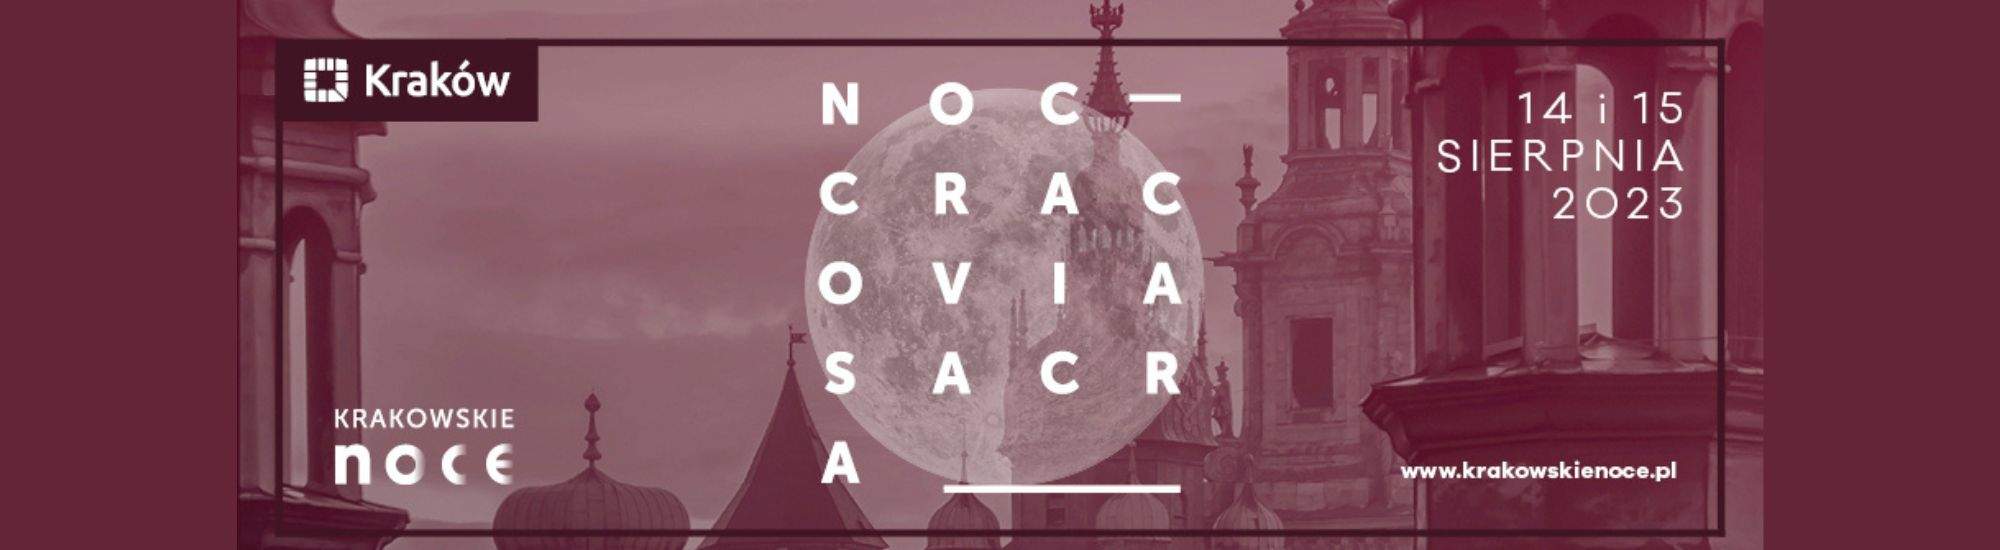 Nächte von Cracovia Sacra: Konzerte, Ausstellungen und die Entdeckung von Kirchengeheimnissen